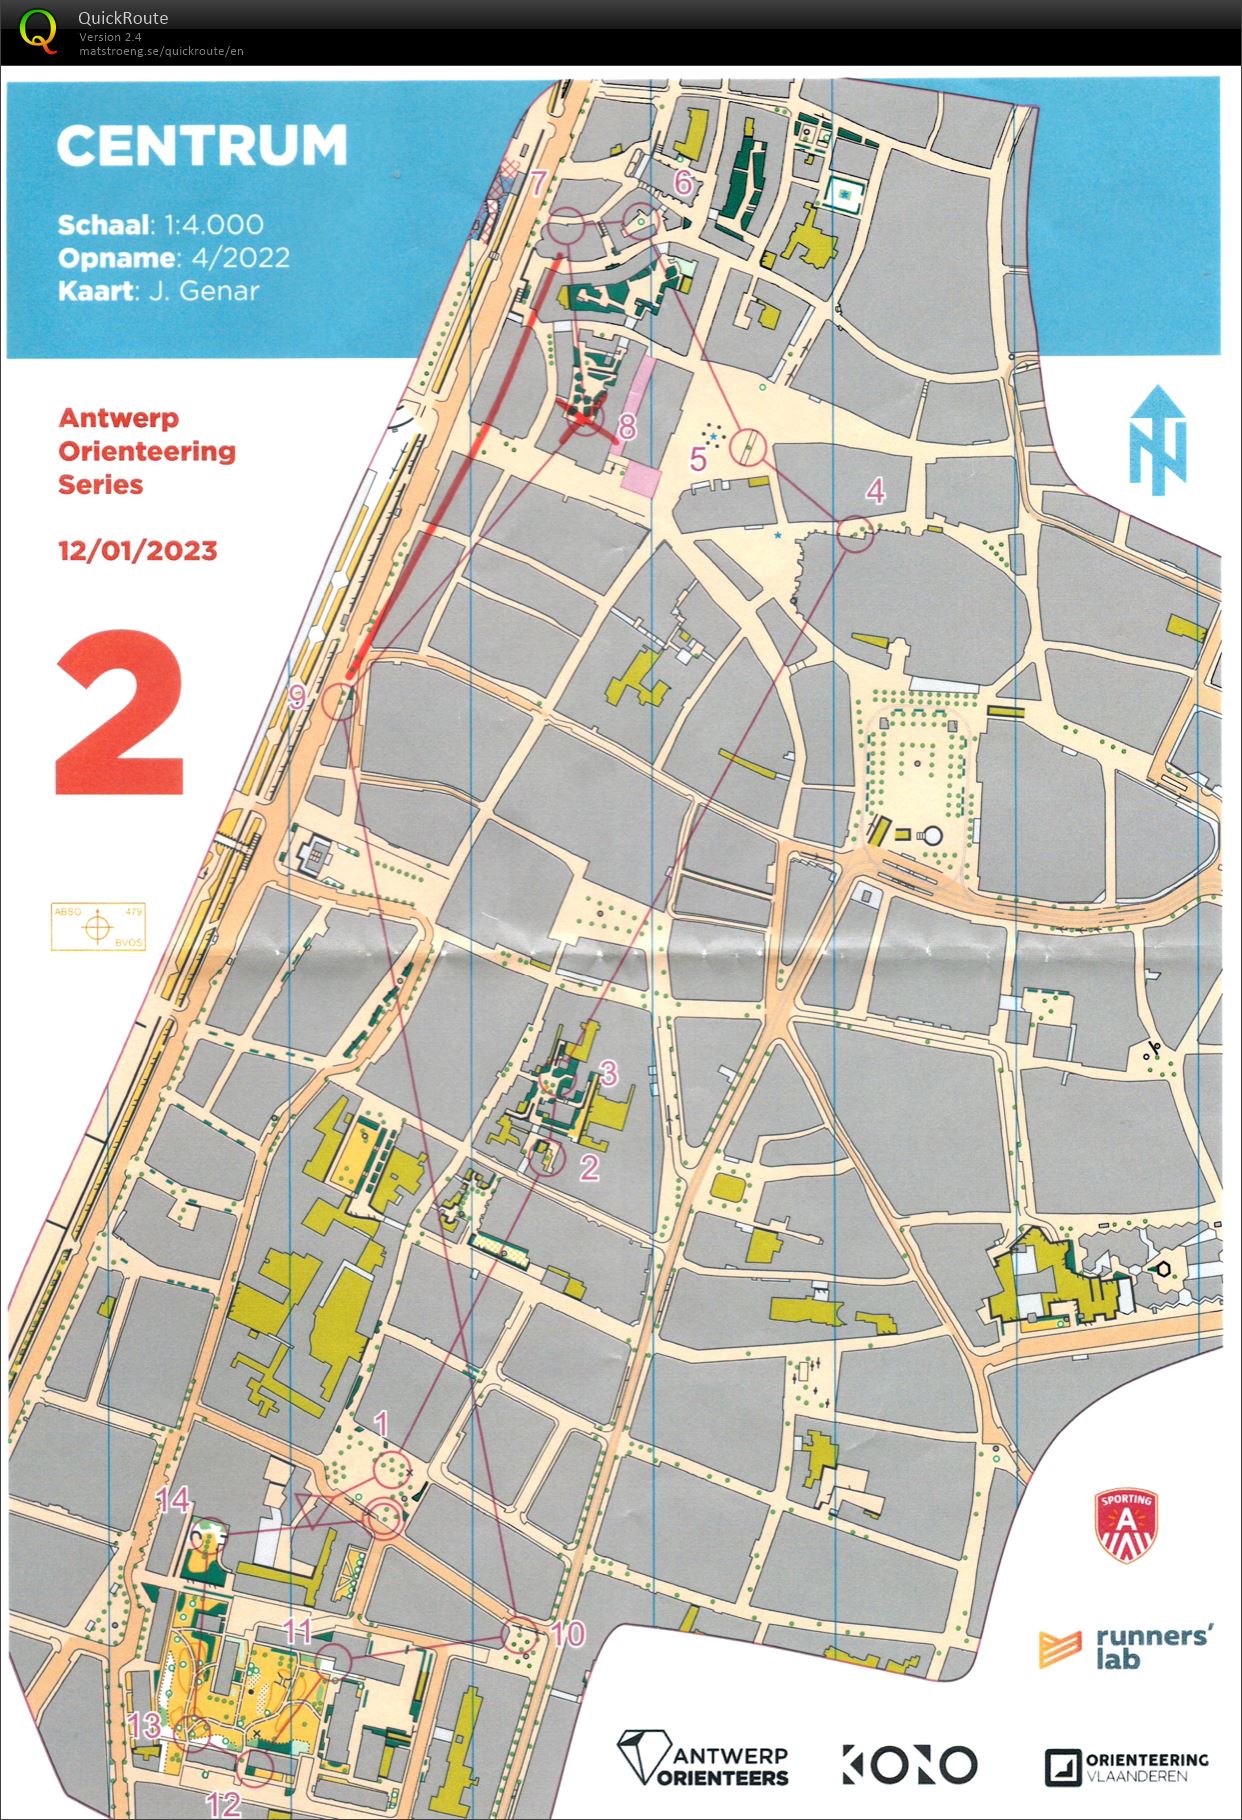 Antwerp Orienteering Series - Centrum - Kort (12/01/2023)